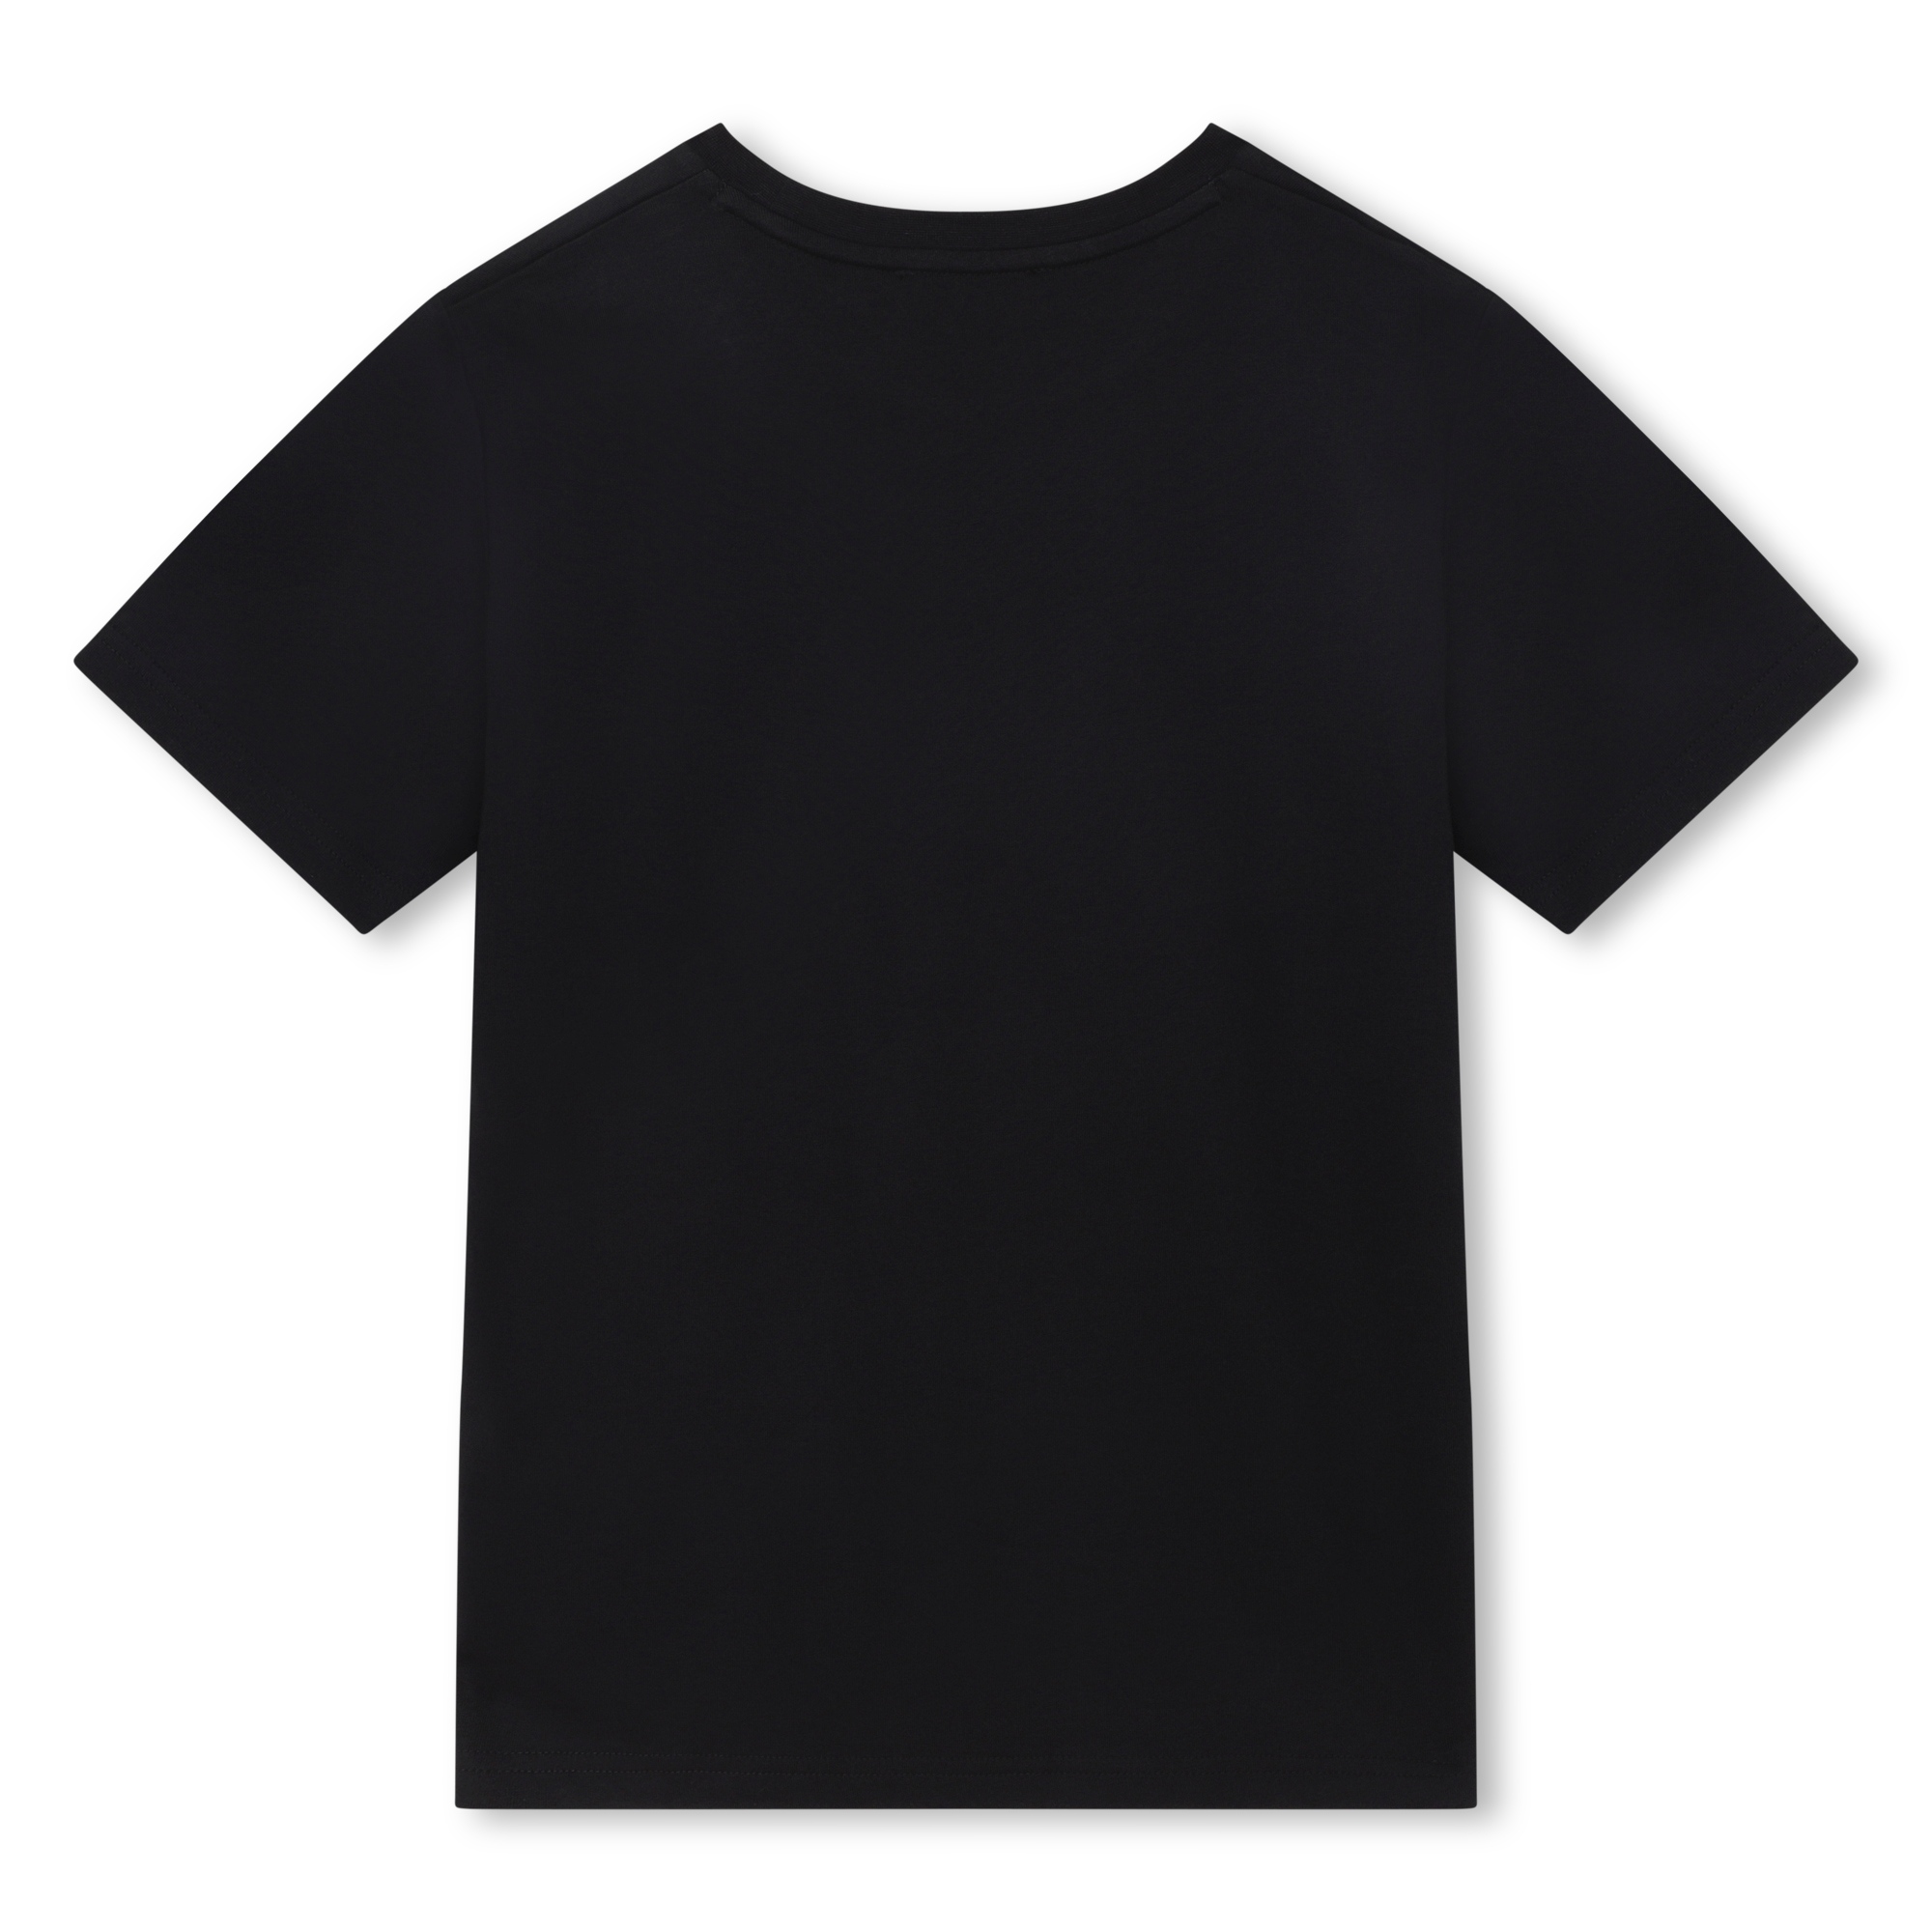 Camiseta con logo estampado DKNY para NIÑO